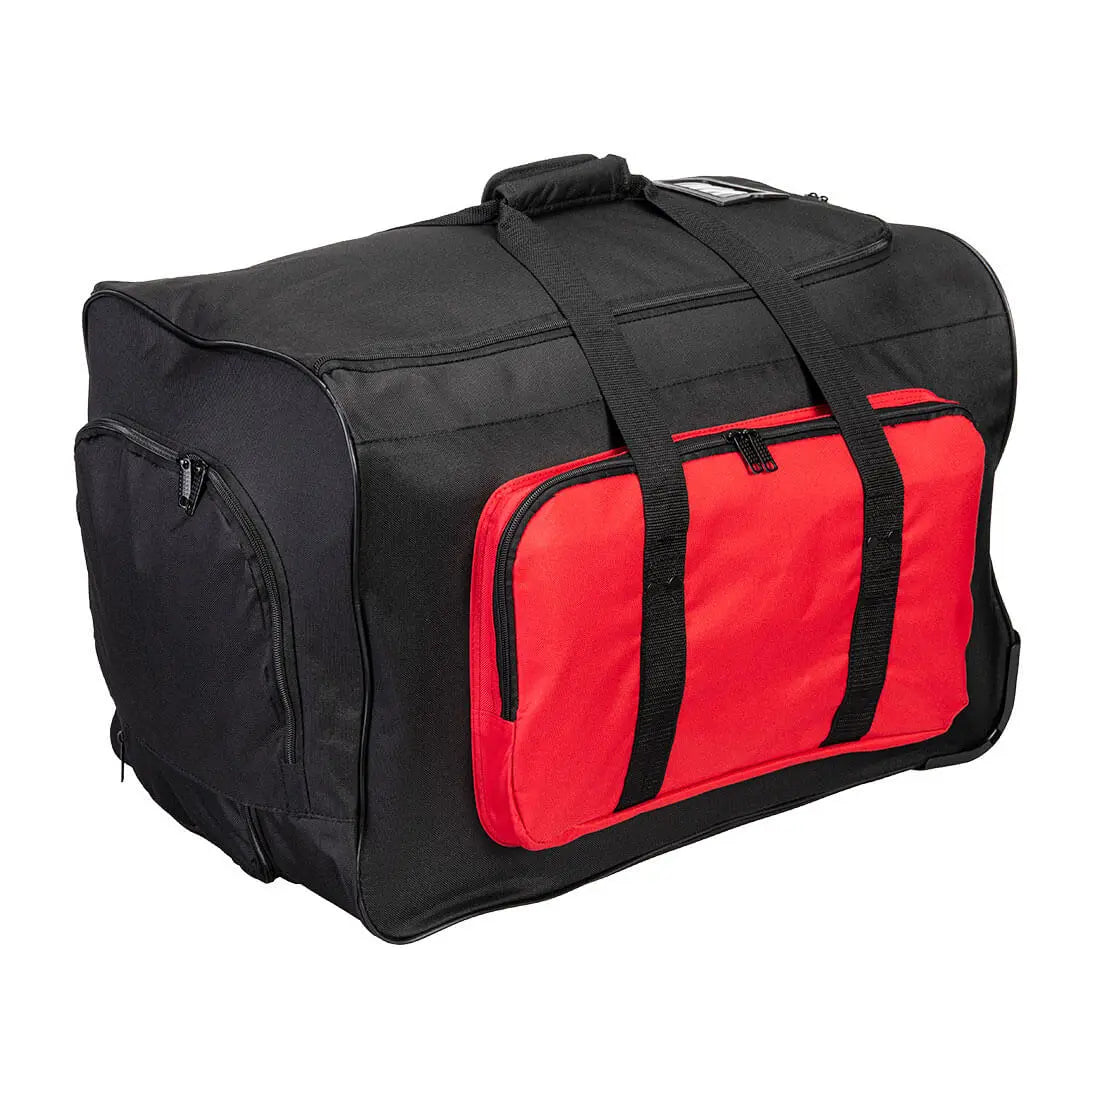 Rolltasche mit Multifunktions-Taschen B907 Workschutz.de